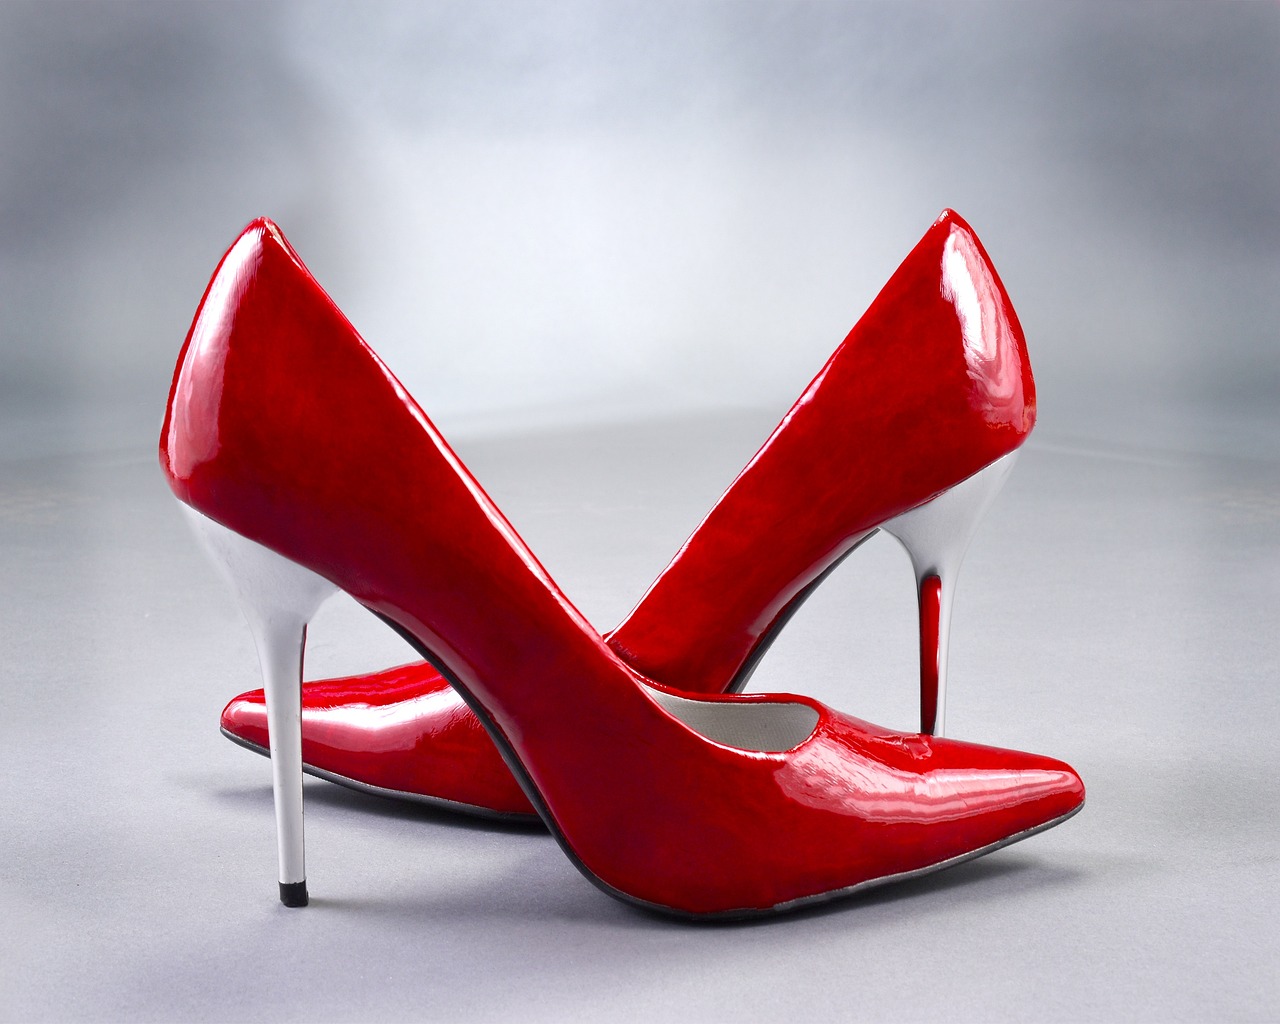 ¿Qué significa el uso de zapatos rojos?